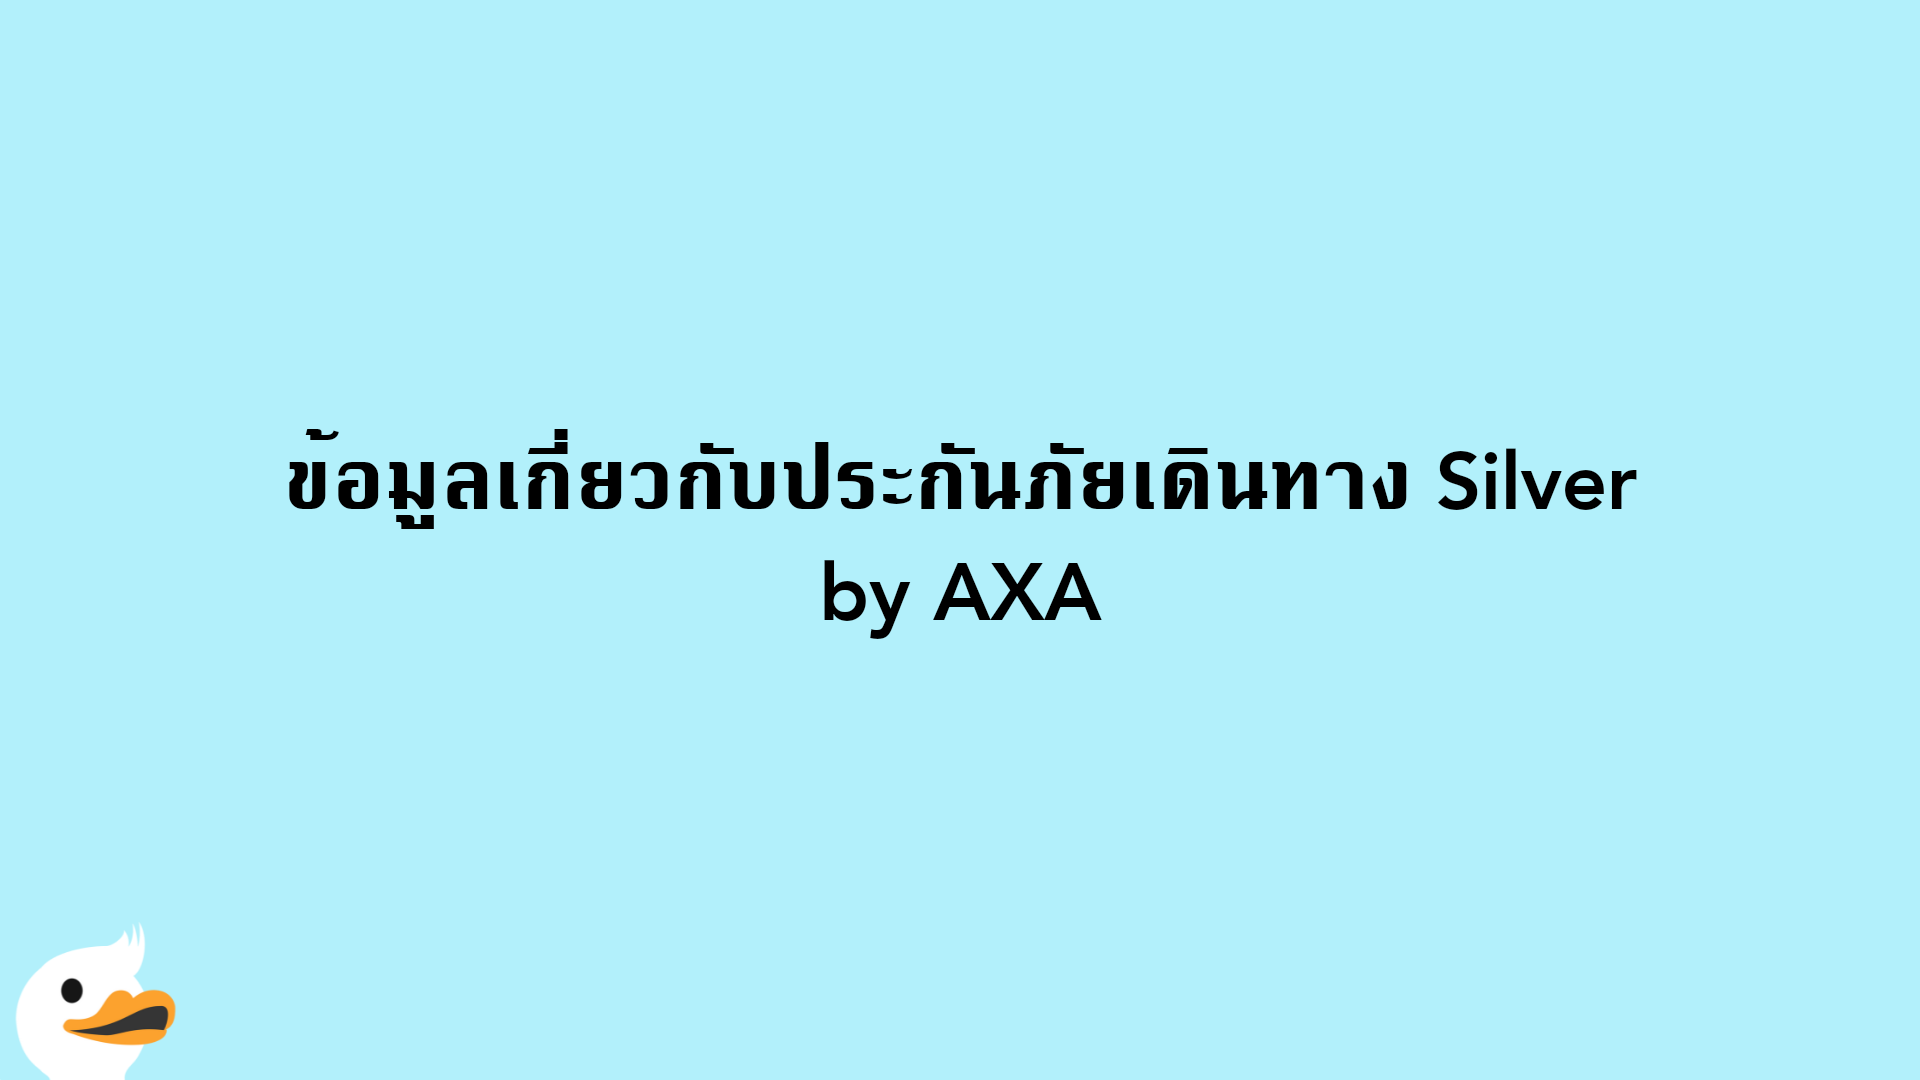 ข้อมูลเกี่ยวกับประกันภัยเดินทาง Silver by AXA